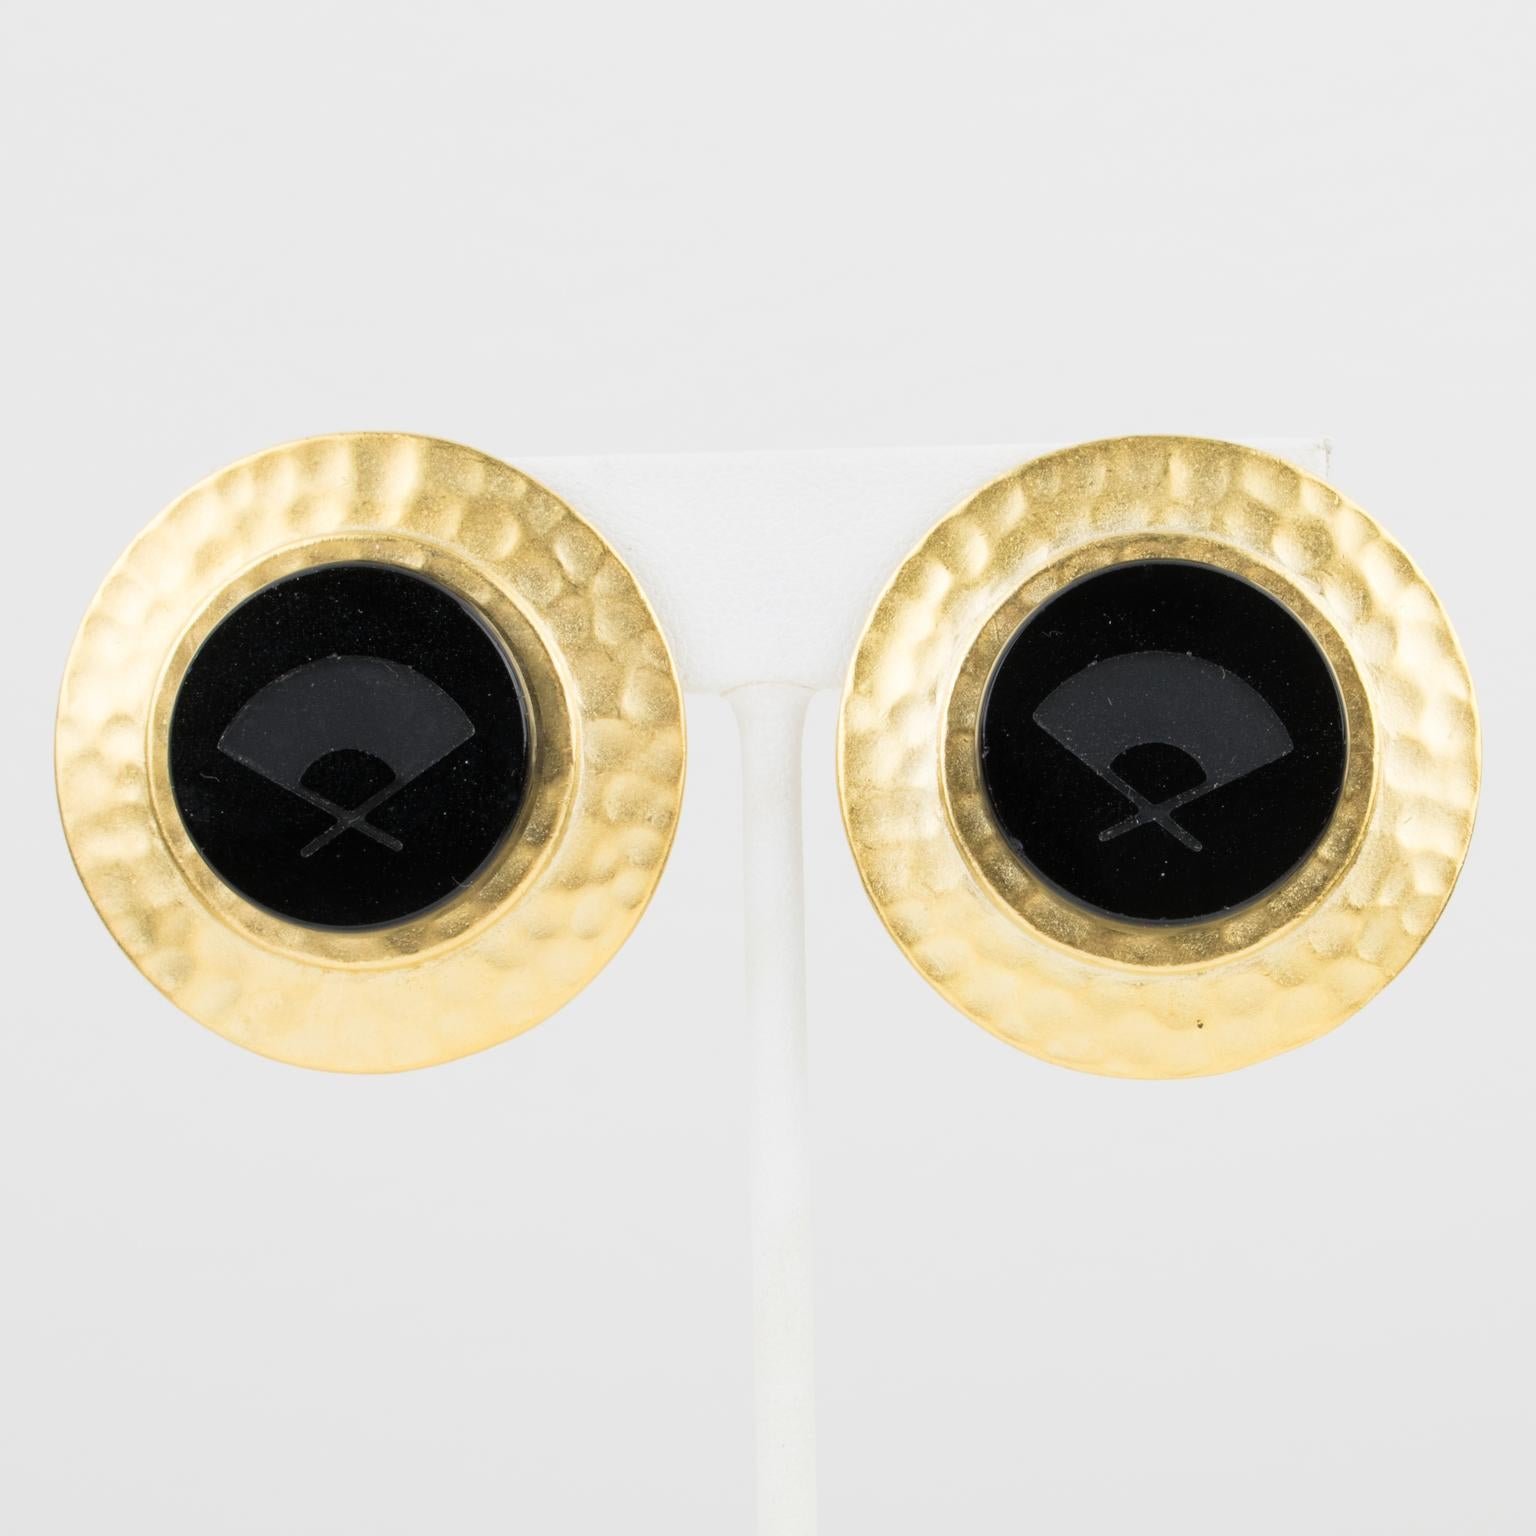 Karl Lagerfeld Paris entwarf diese hübschen Ohrringe zum Anstecken. Die Stücke verfügen über einen runden, vergoldeten Metallrahmen mit Textur, der von einer schwarzen Glasintarsie gekrönt wird, in die das Logo des Designerfächers eingraviert